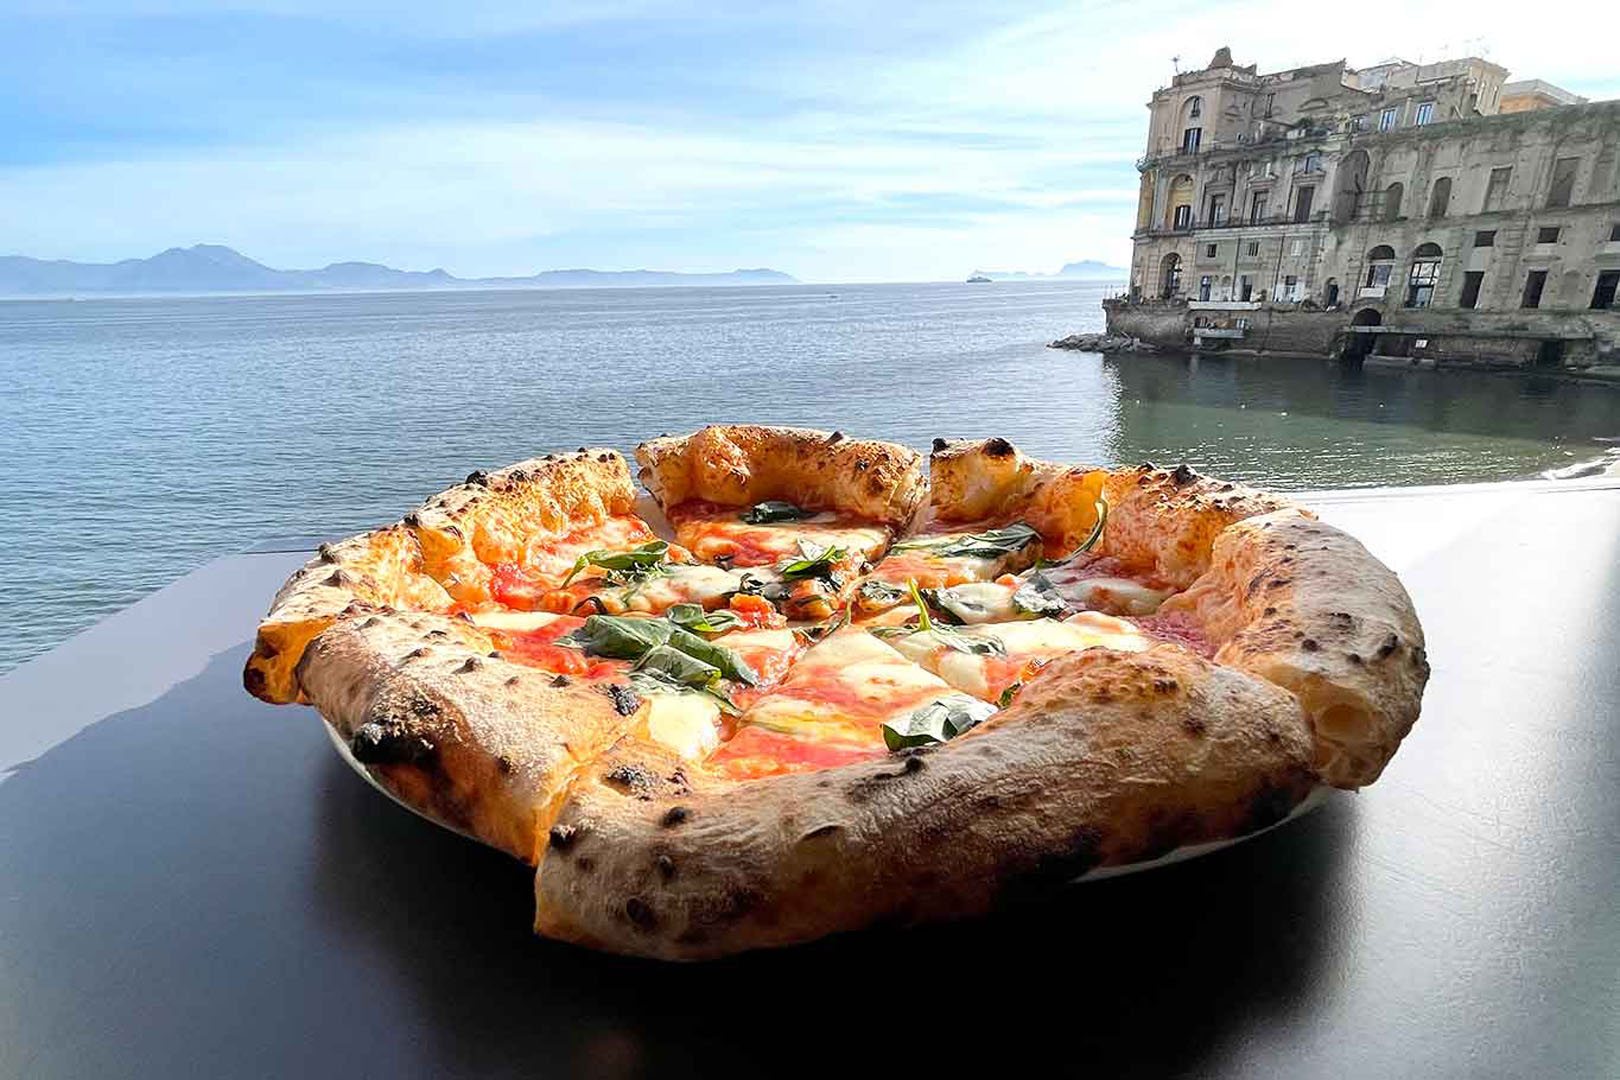 Le Migliori Pizzerie di Napoli | FLAWLESS.life - The Lifestyle Guide